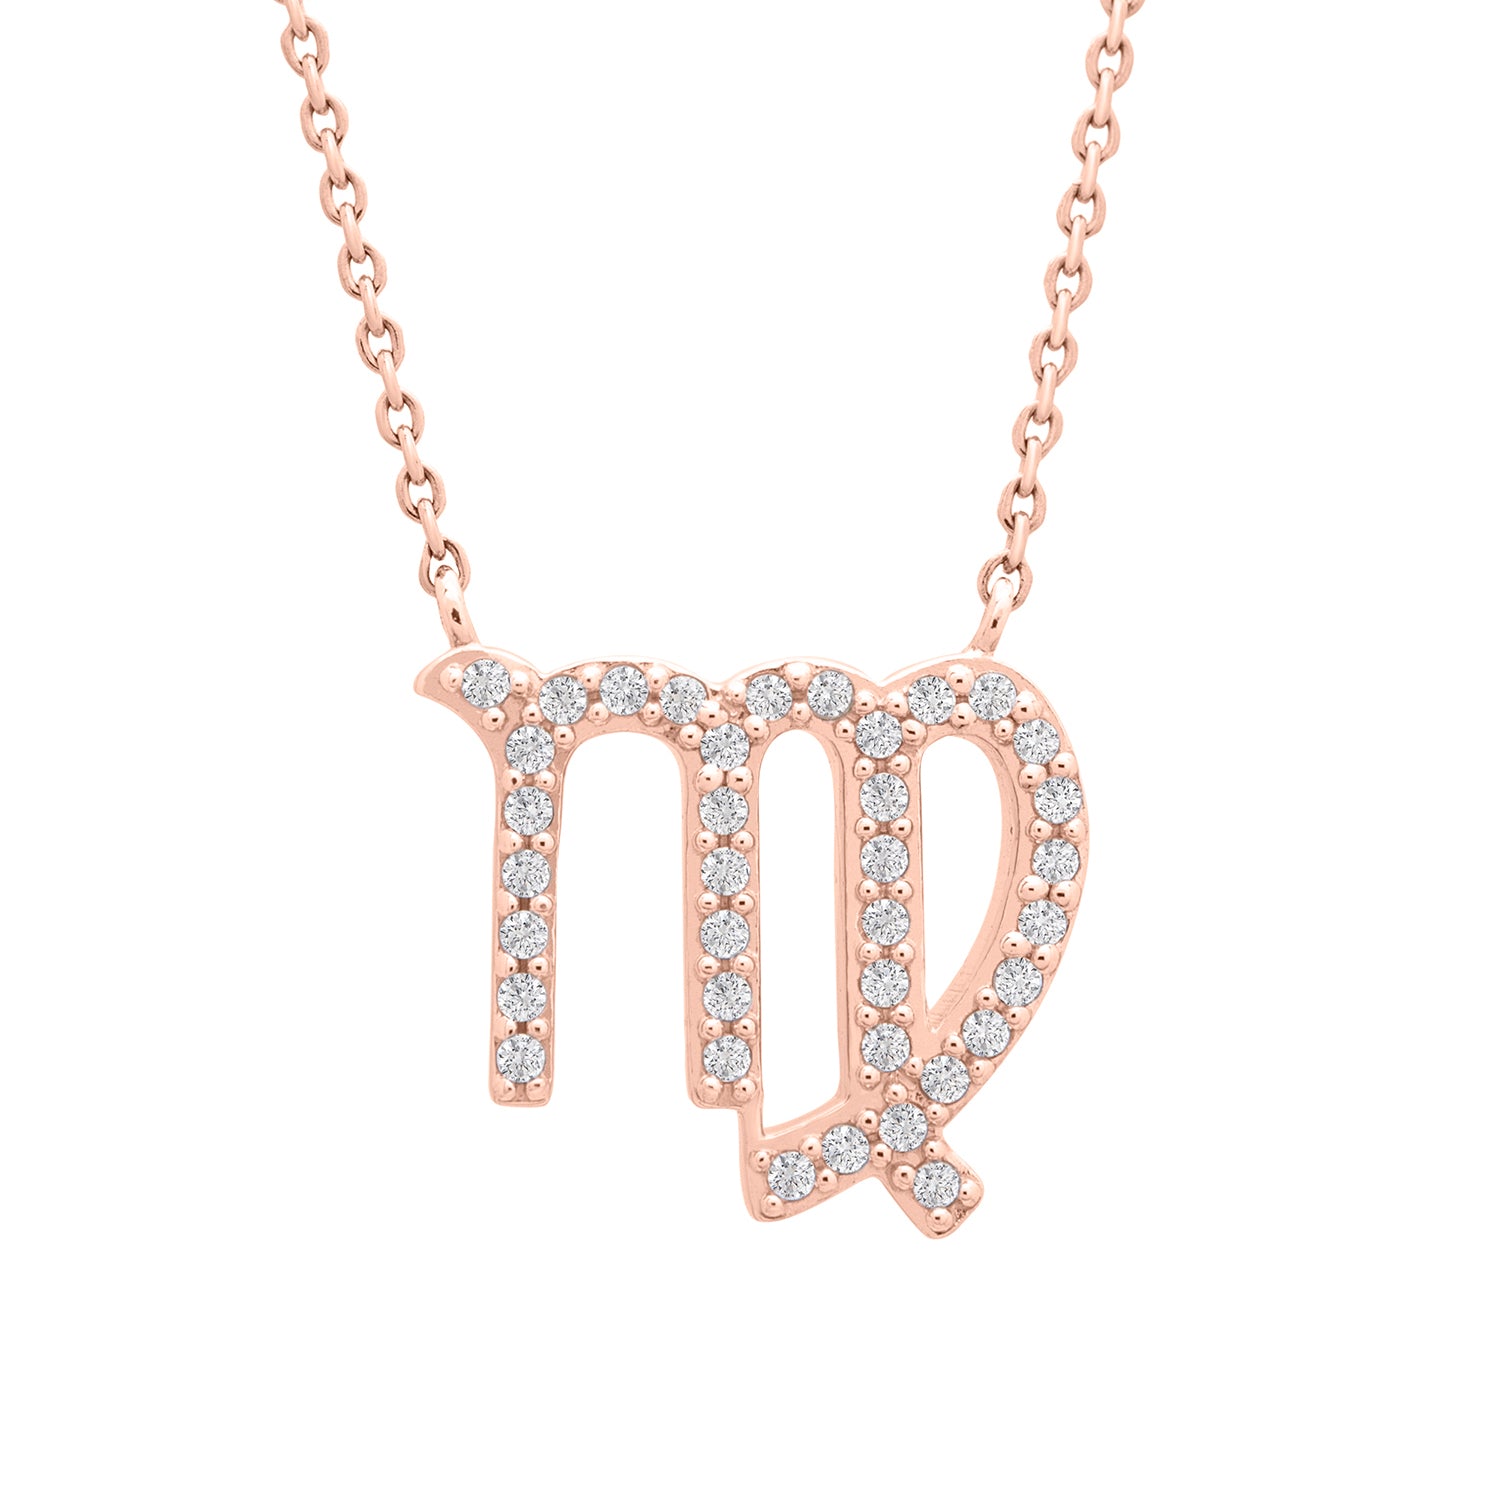 Virgo Necklace | Maquia Jewelry